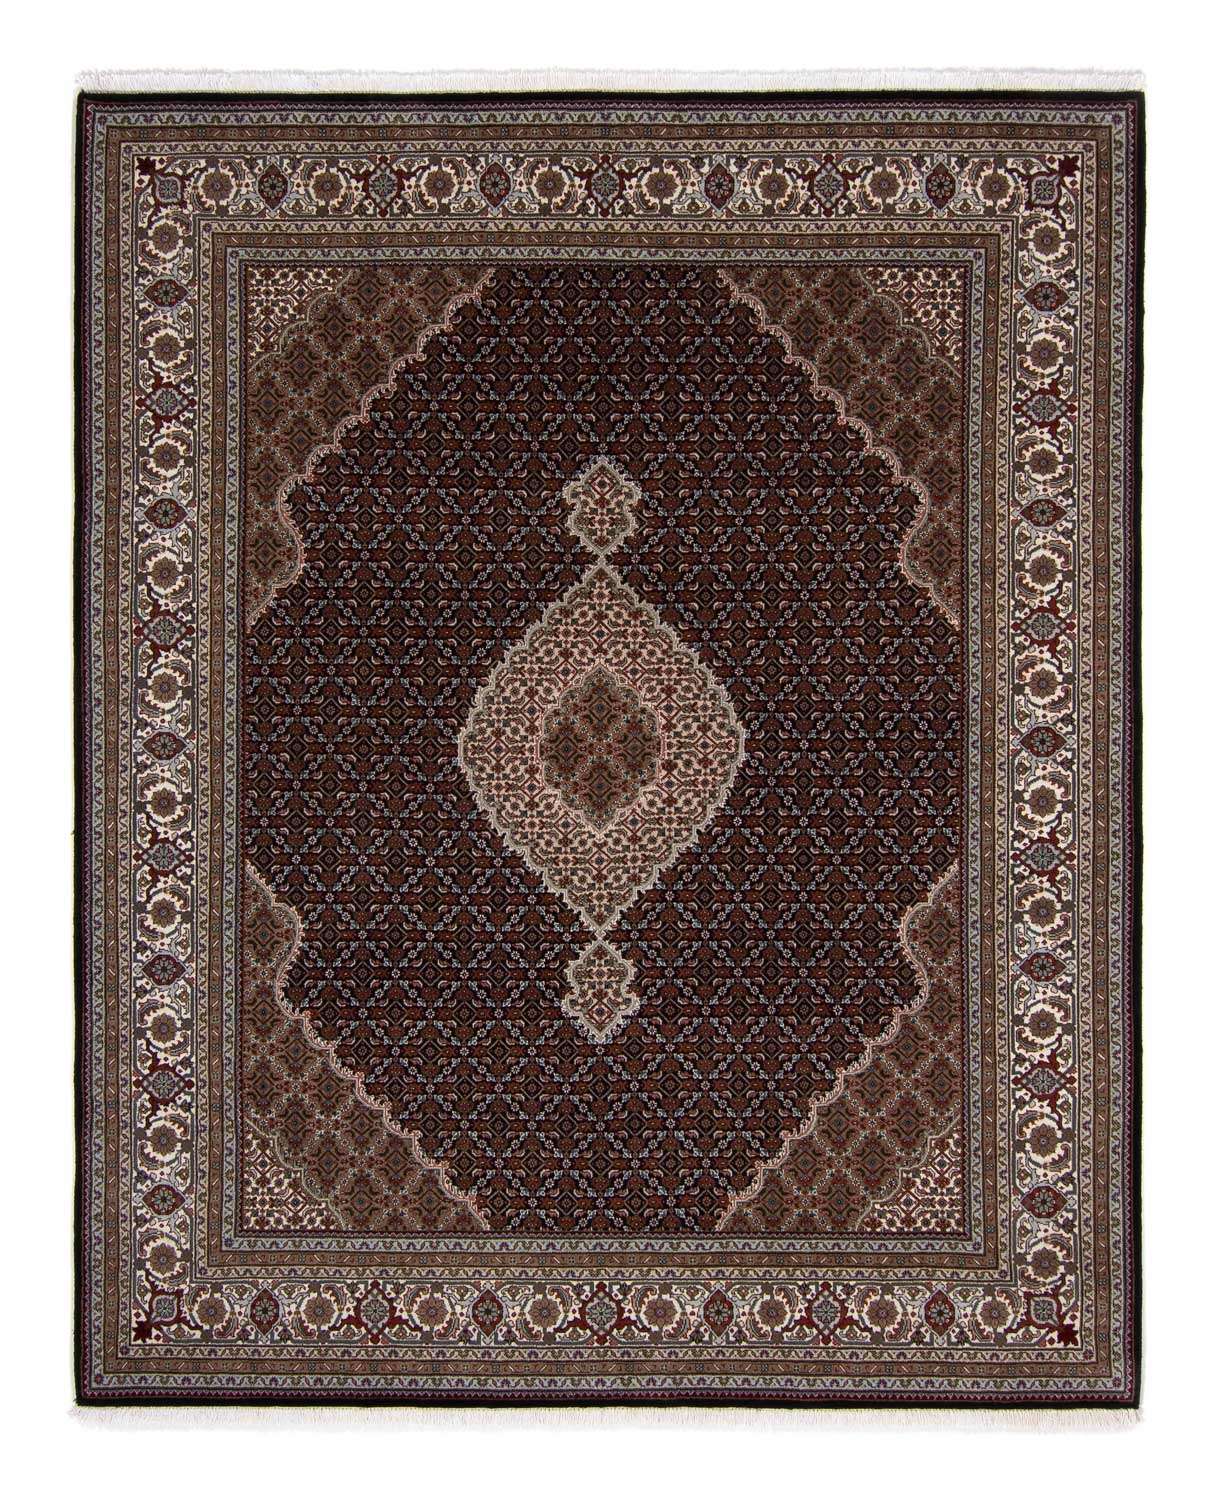 Dywan perski - Tabriz - 253 x 203 cm - ciemnoniebieski